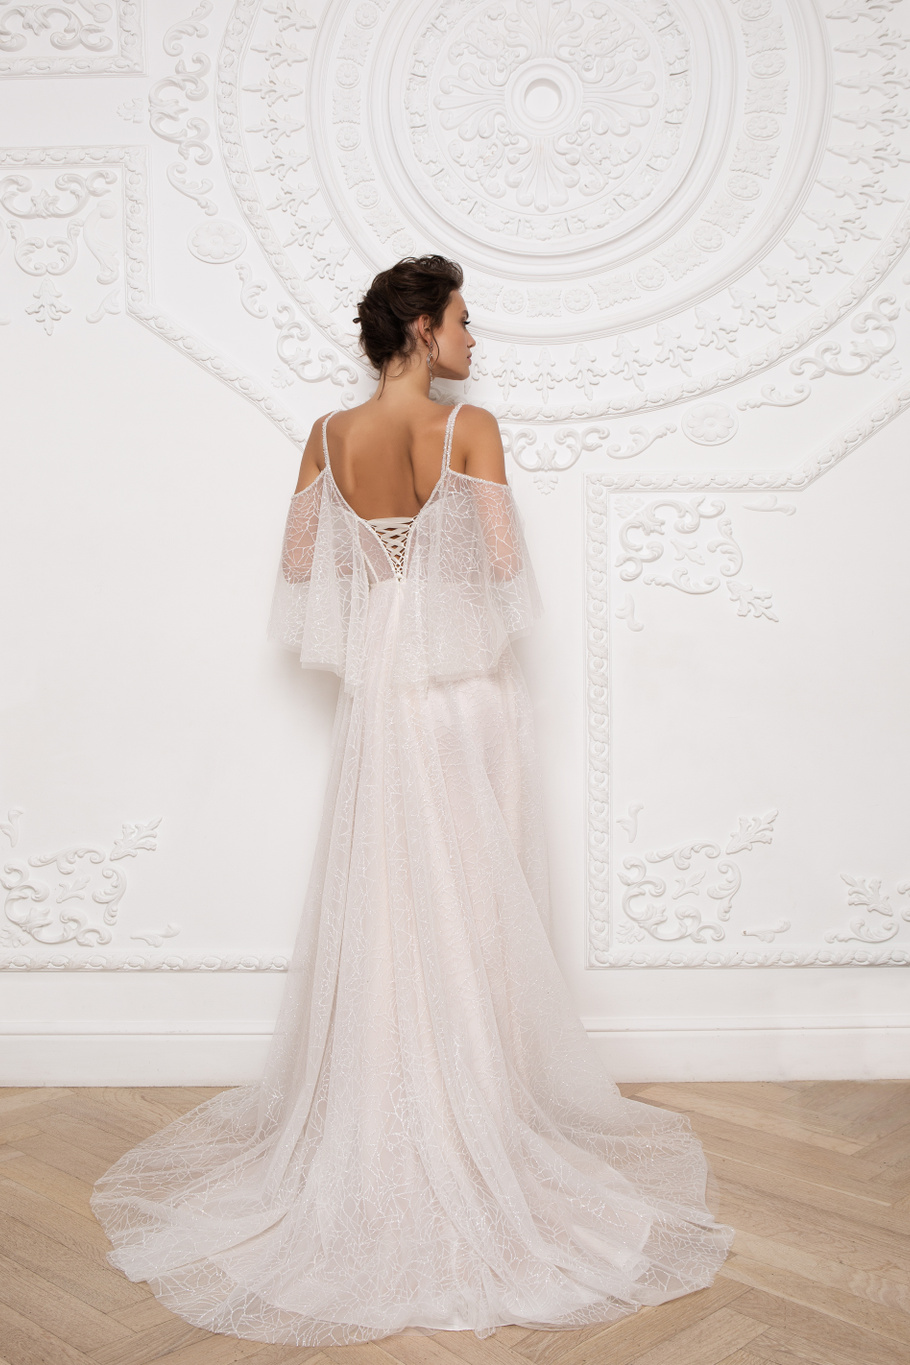 Купить свадебное платье «Кассия» Мэрри Марк из коллекции 2020 года в Нижнем Новгороде